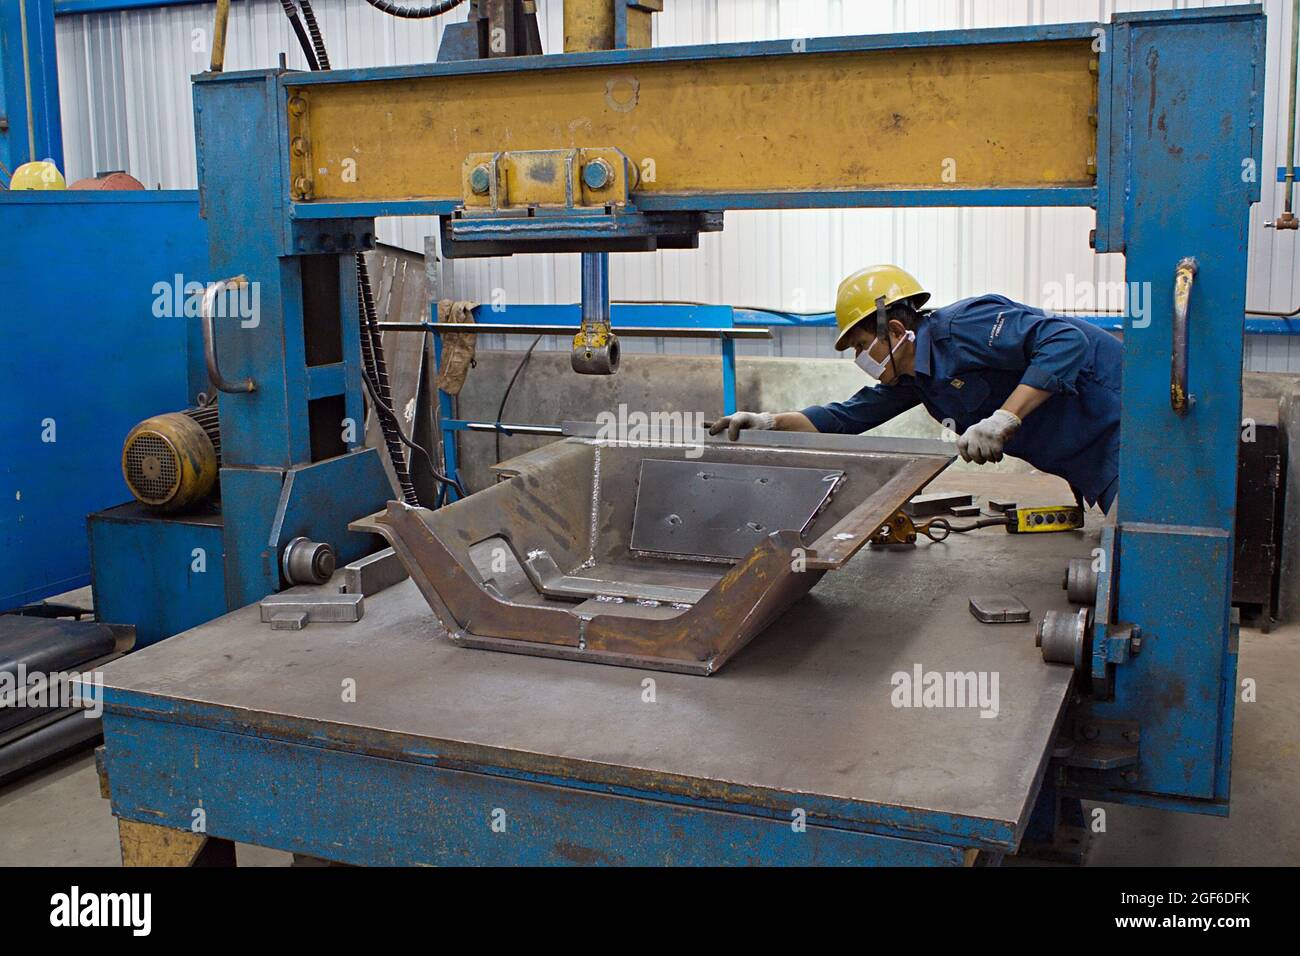 Un tecnico sta misurando un prototipo in un'officina di fabbricazione. Foto Stock